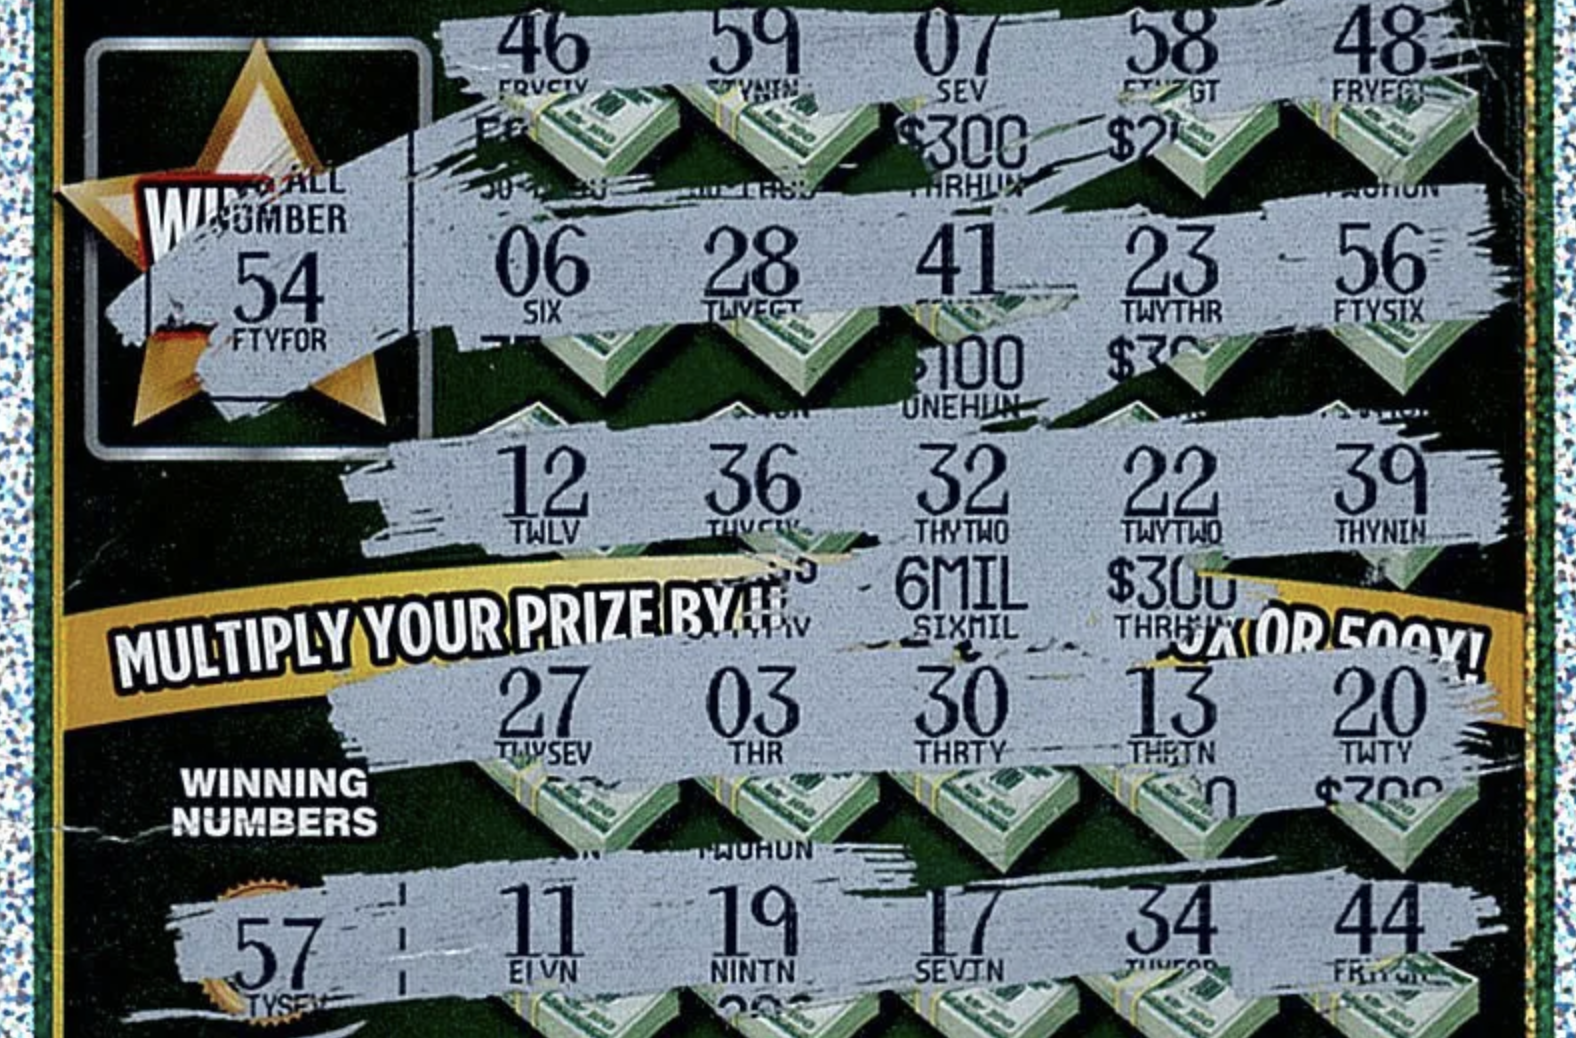 Michigan Lottery Club dobi 6 milijonov dolarjev za izbris hipotek